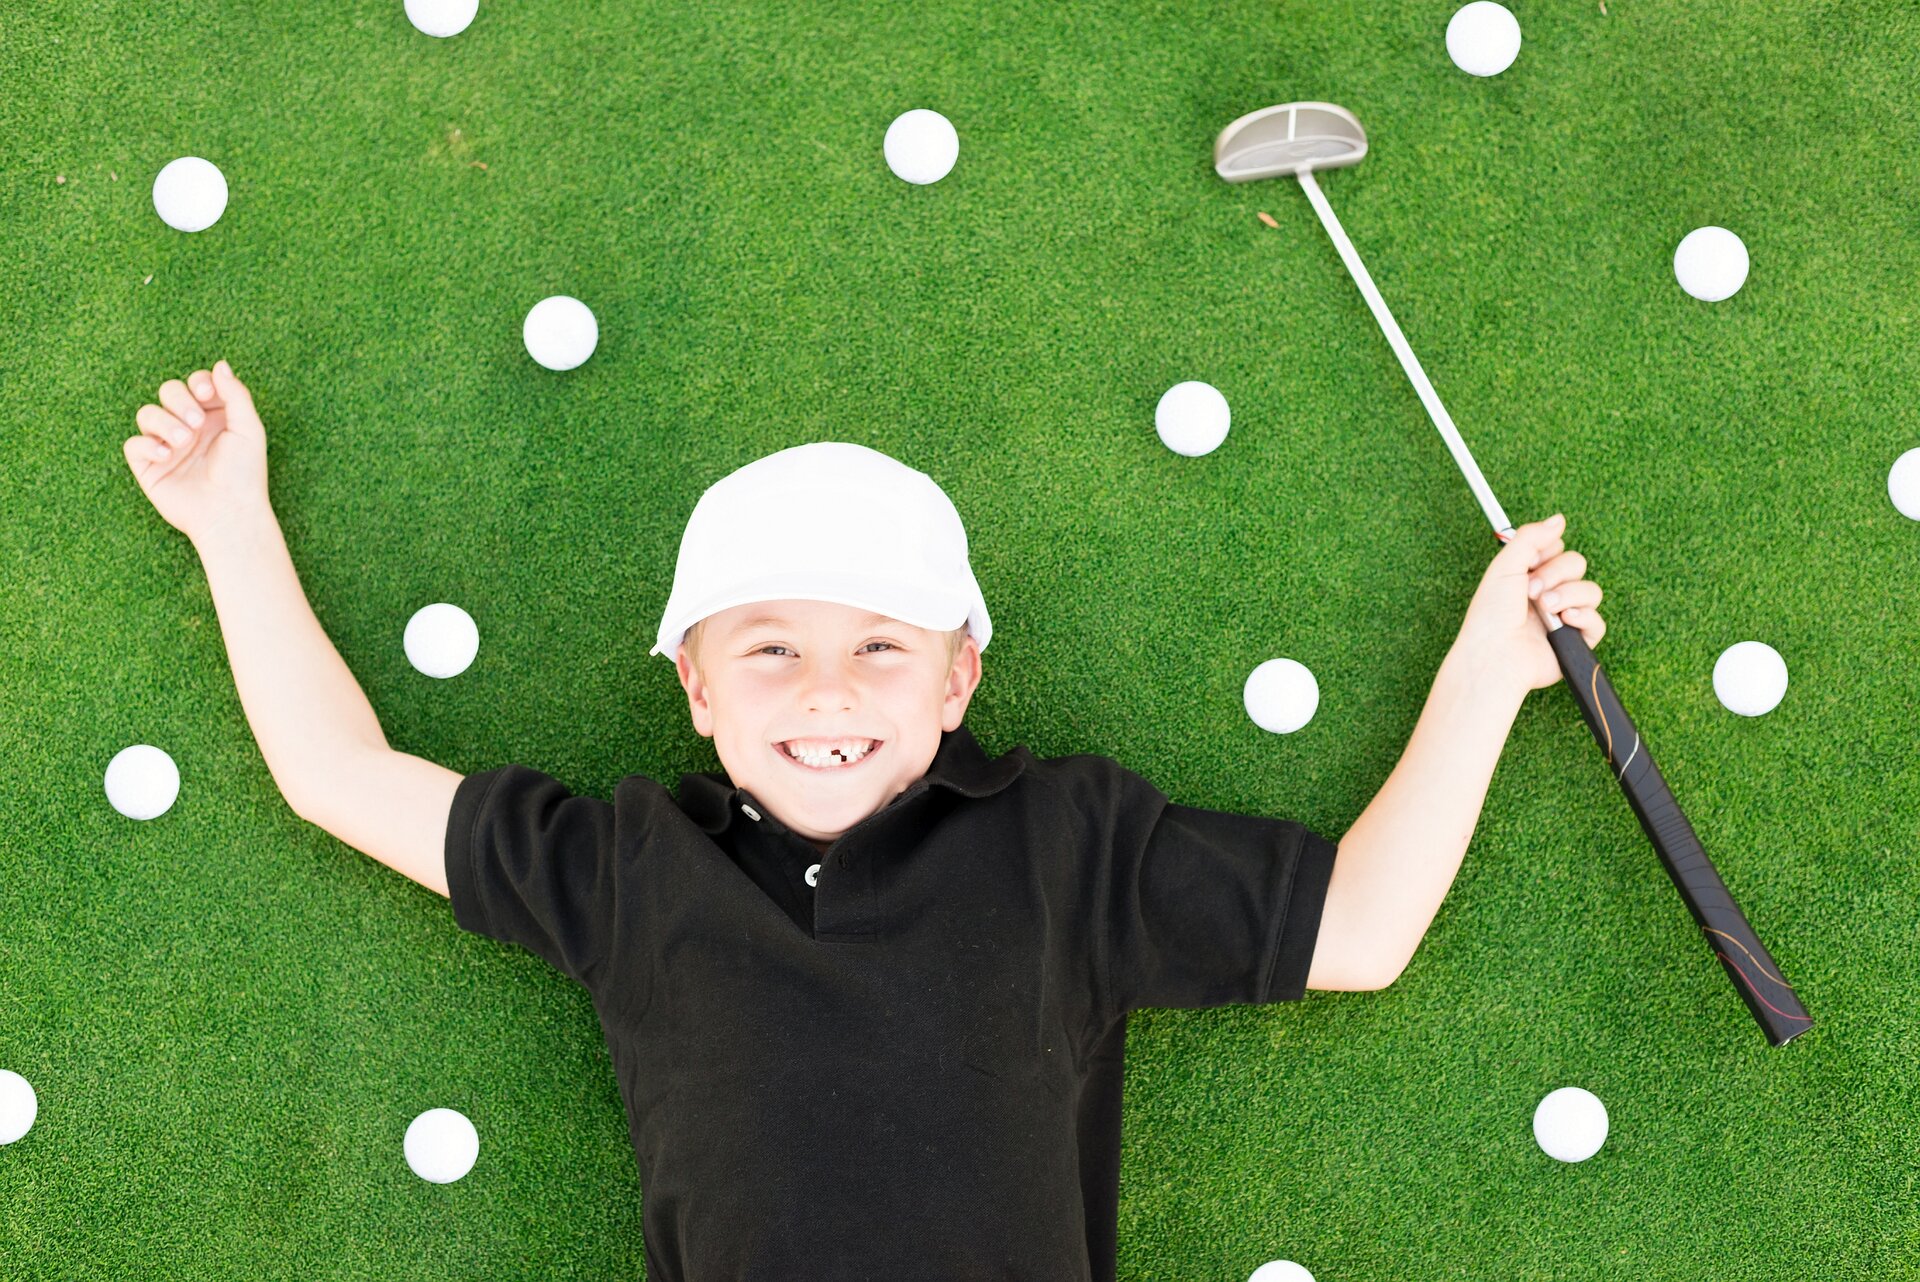 Der Oberkörper eines lachenden, zehnjährigern Jungen, bekleidet mit einem schwarzen T-Shirt und einer weißen Schirmmütze, liegt auf der Rasenfläche eines Golfplatzes, in der rechten Hand hält er einen Golfschläger, rings um ihn verteilt sind mehrere Golfbälle 